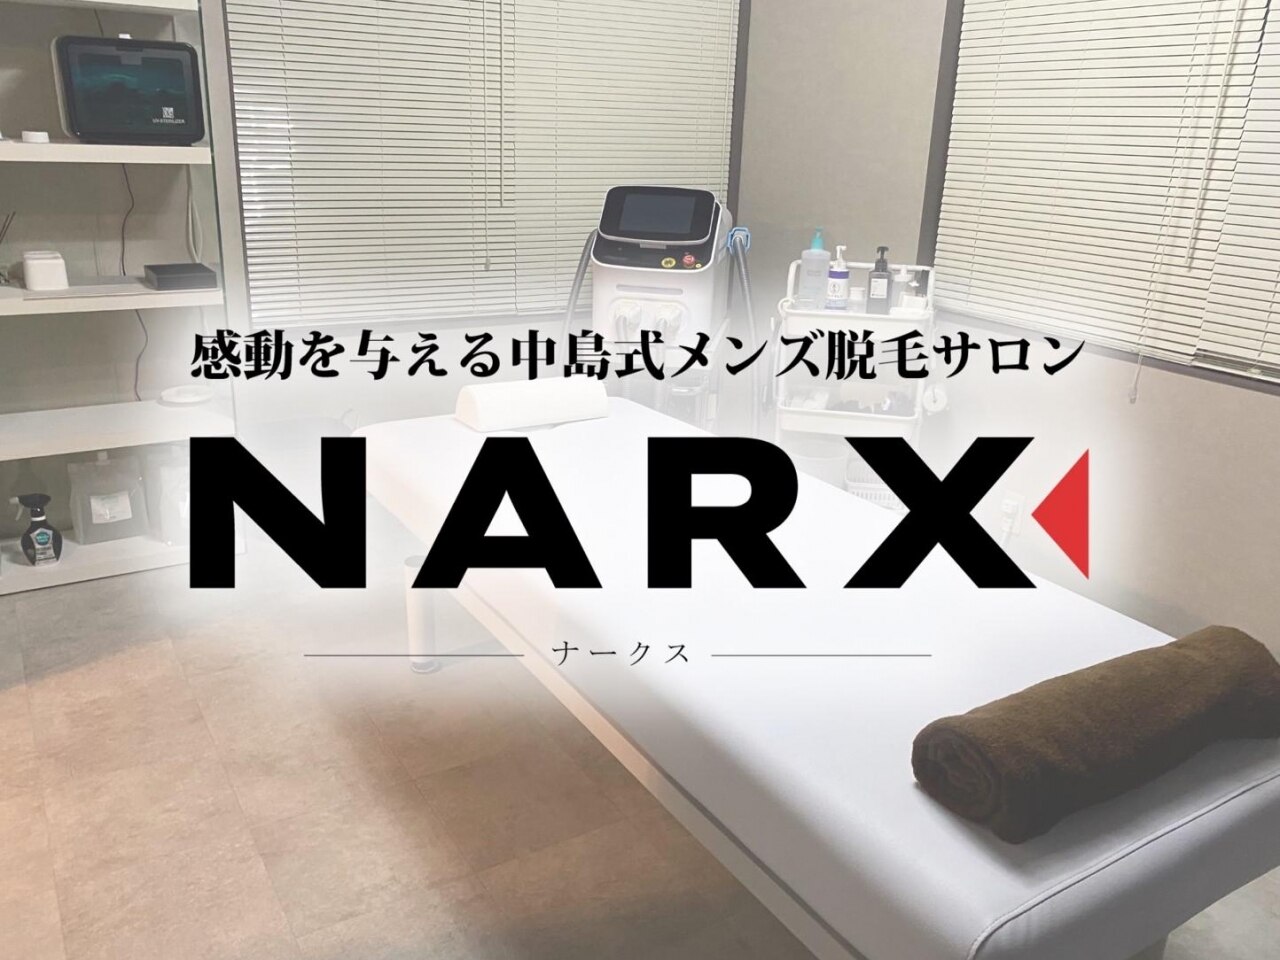 ナークス(NARX)の紹介画像